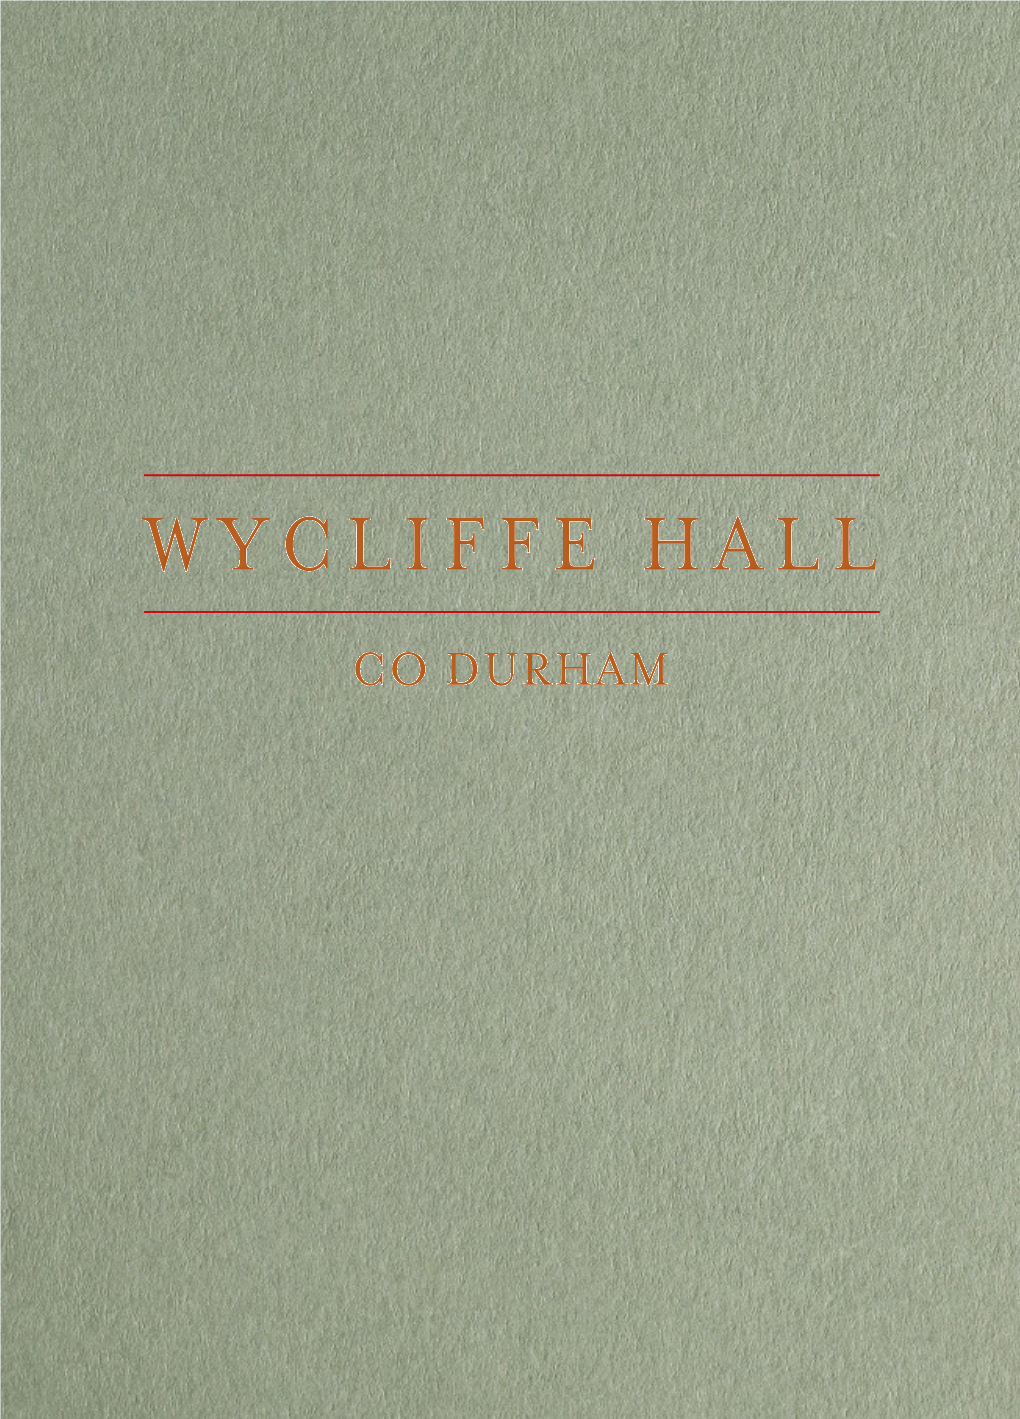 Wycliffe Hall